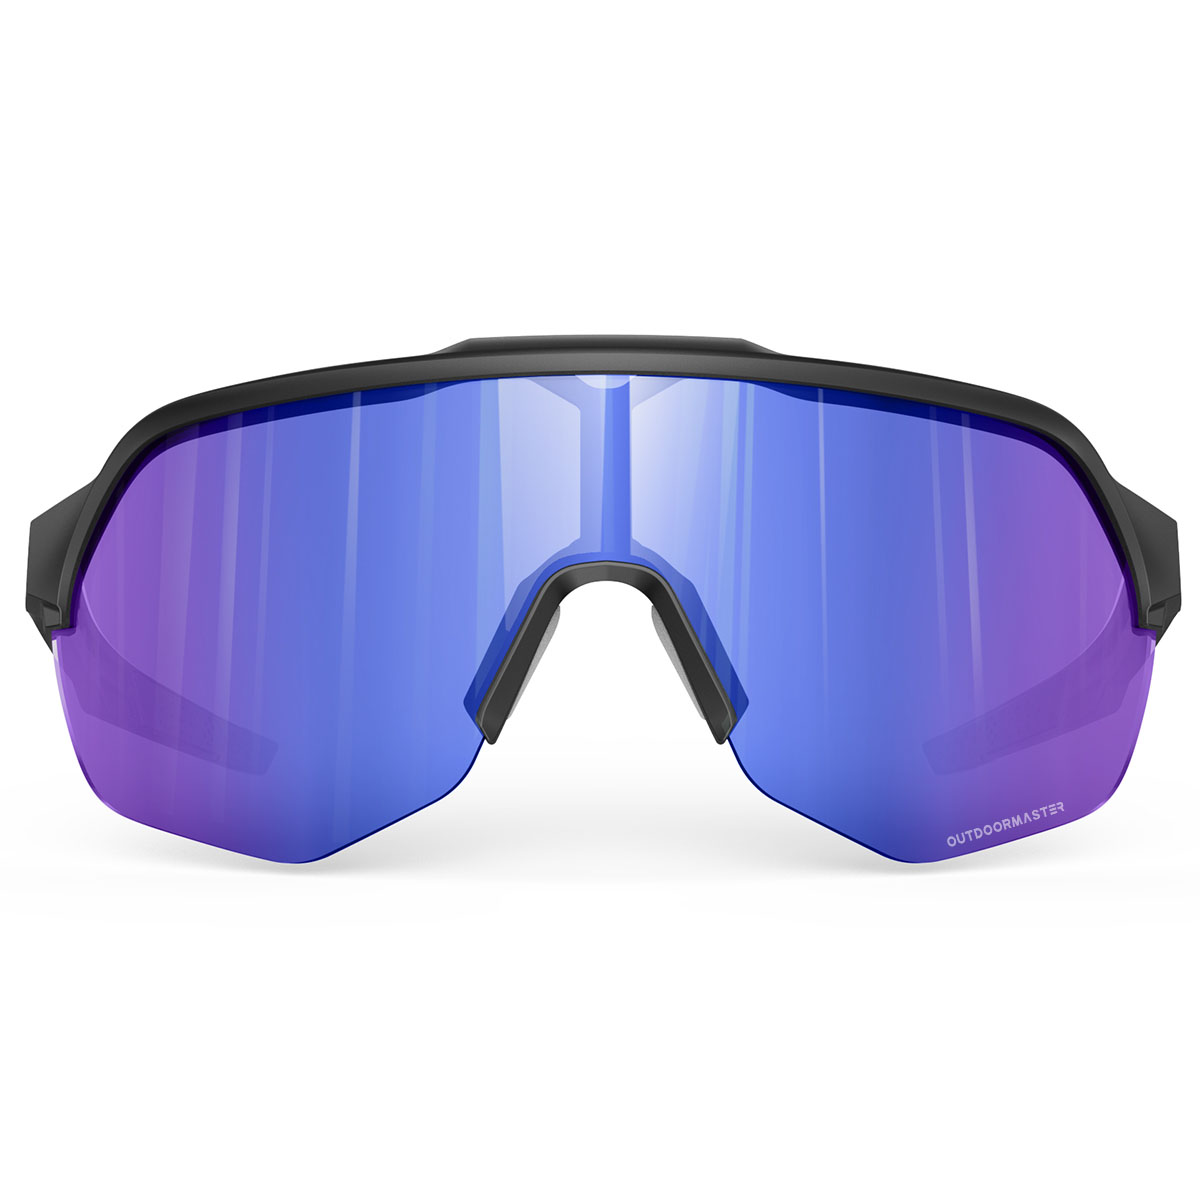 HCYCFY Photochromic Polarized Fishing Sunglasses for India